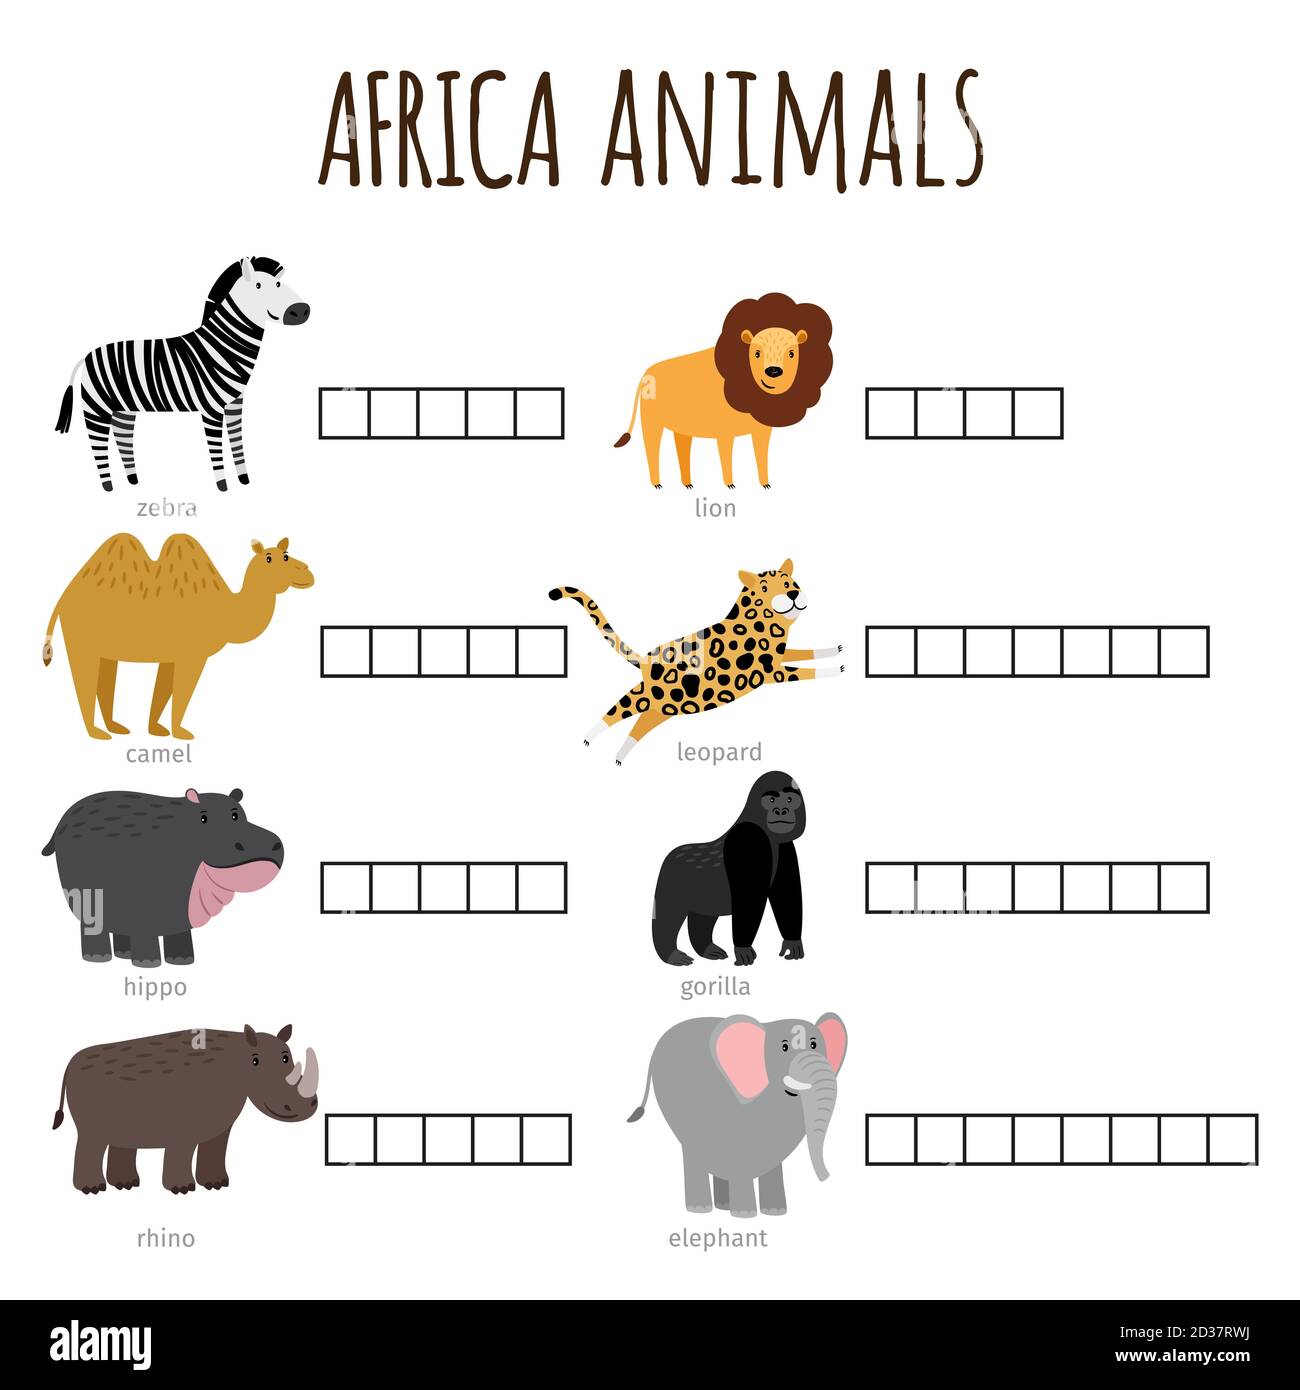 Juego De Palabras Para Los Niños Cómo Se Llama Los Animales Africanos